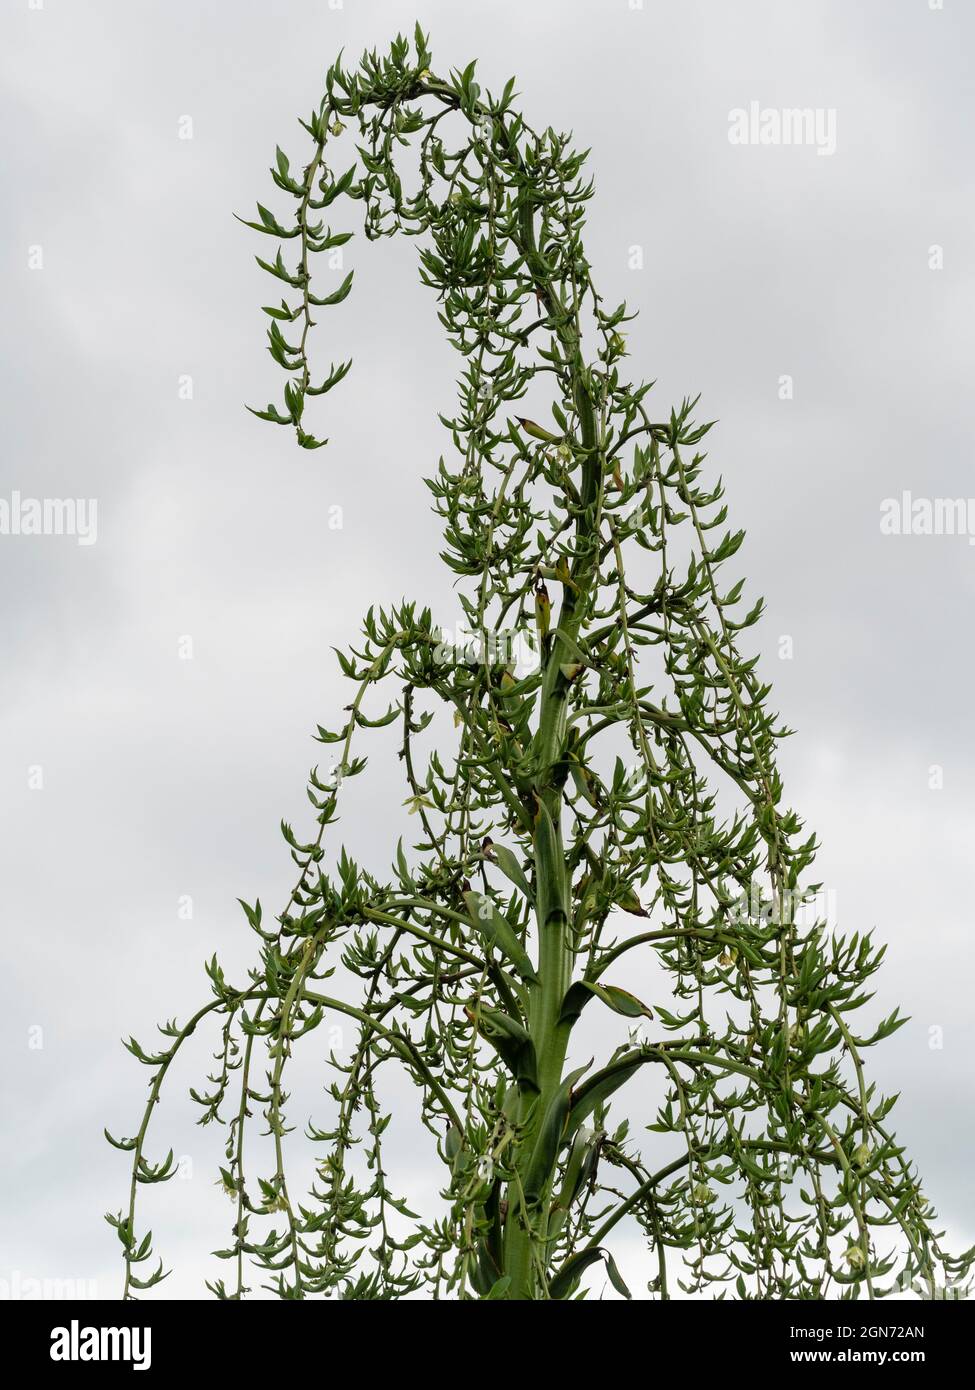 Giant flower panicle of the exotic Yucca relative Furcraea longaeva showing developing bulbils Stock Photo